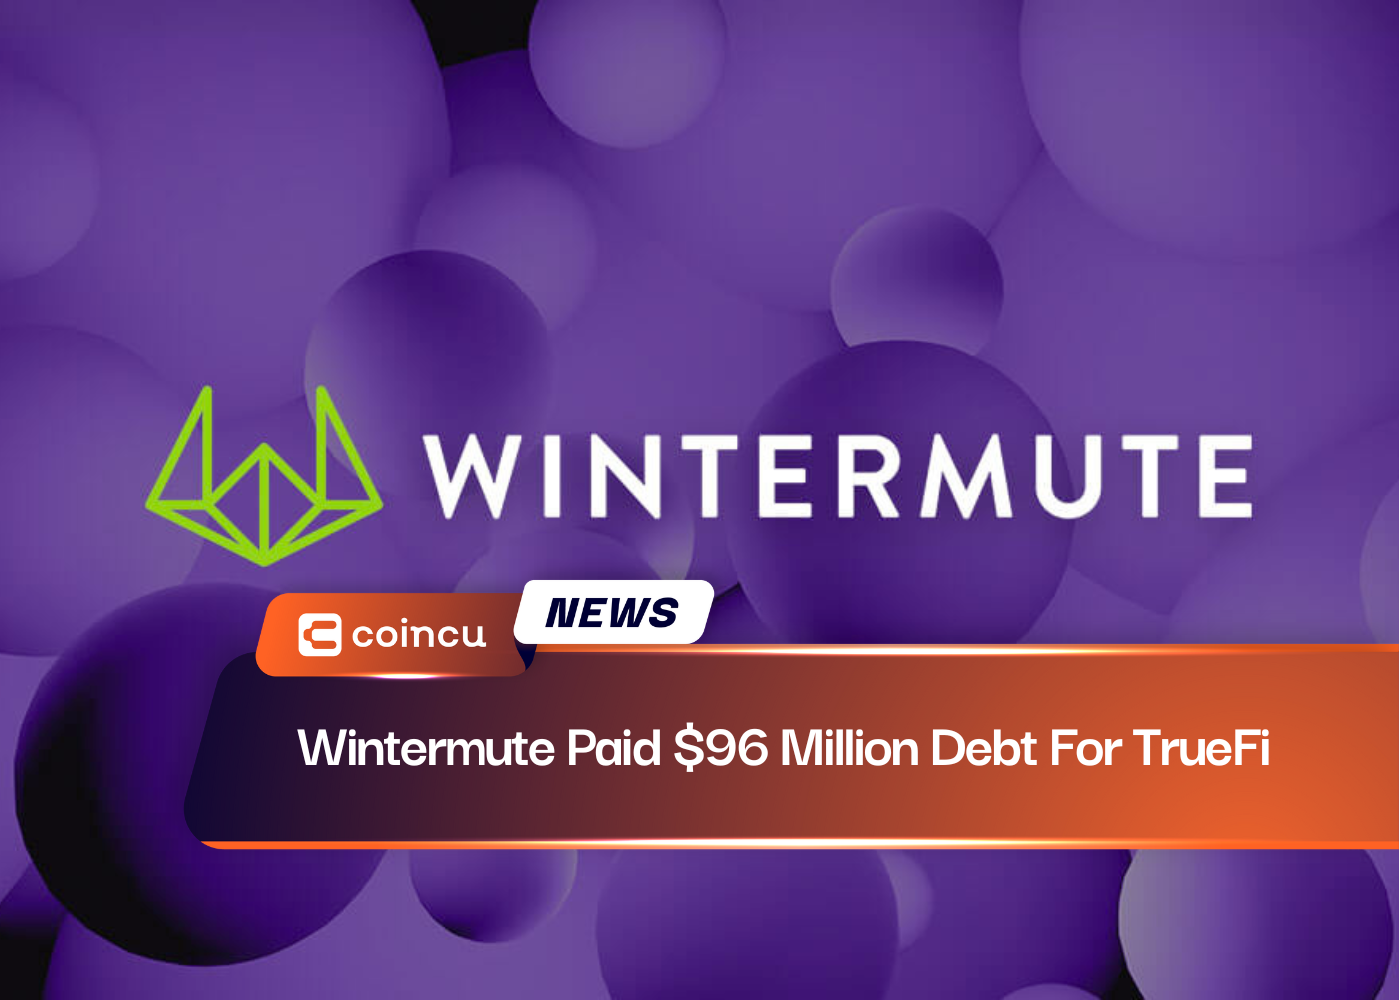 Wintermute pagou uma dívida de US$ 96 milhões pela TrueFi